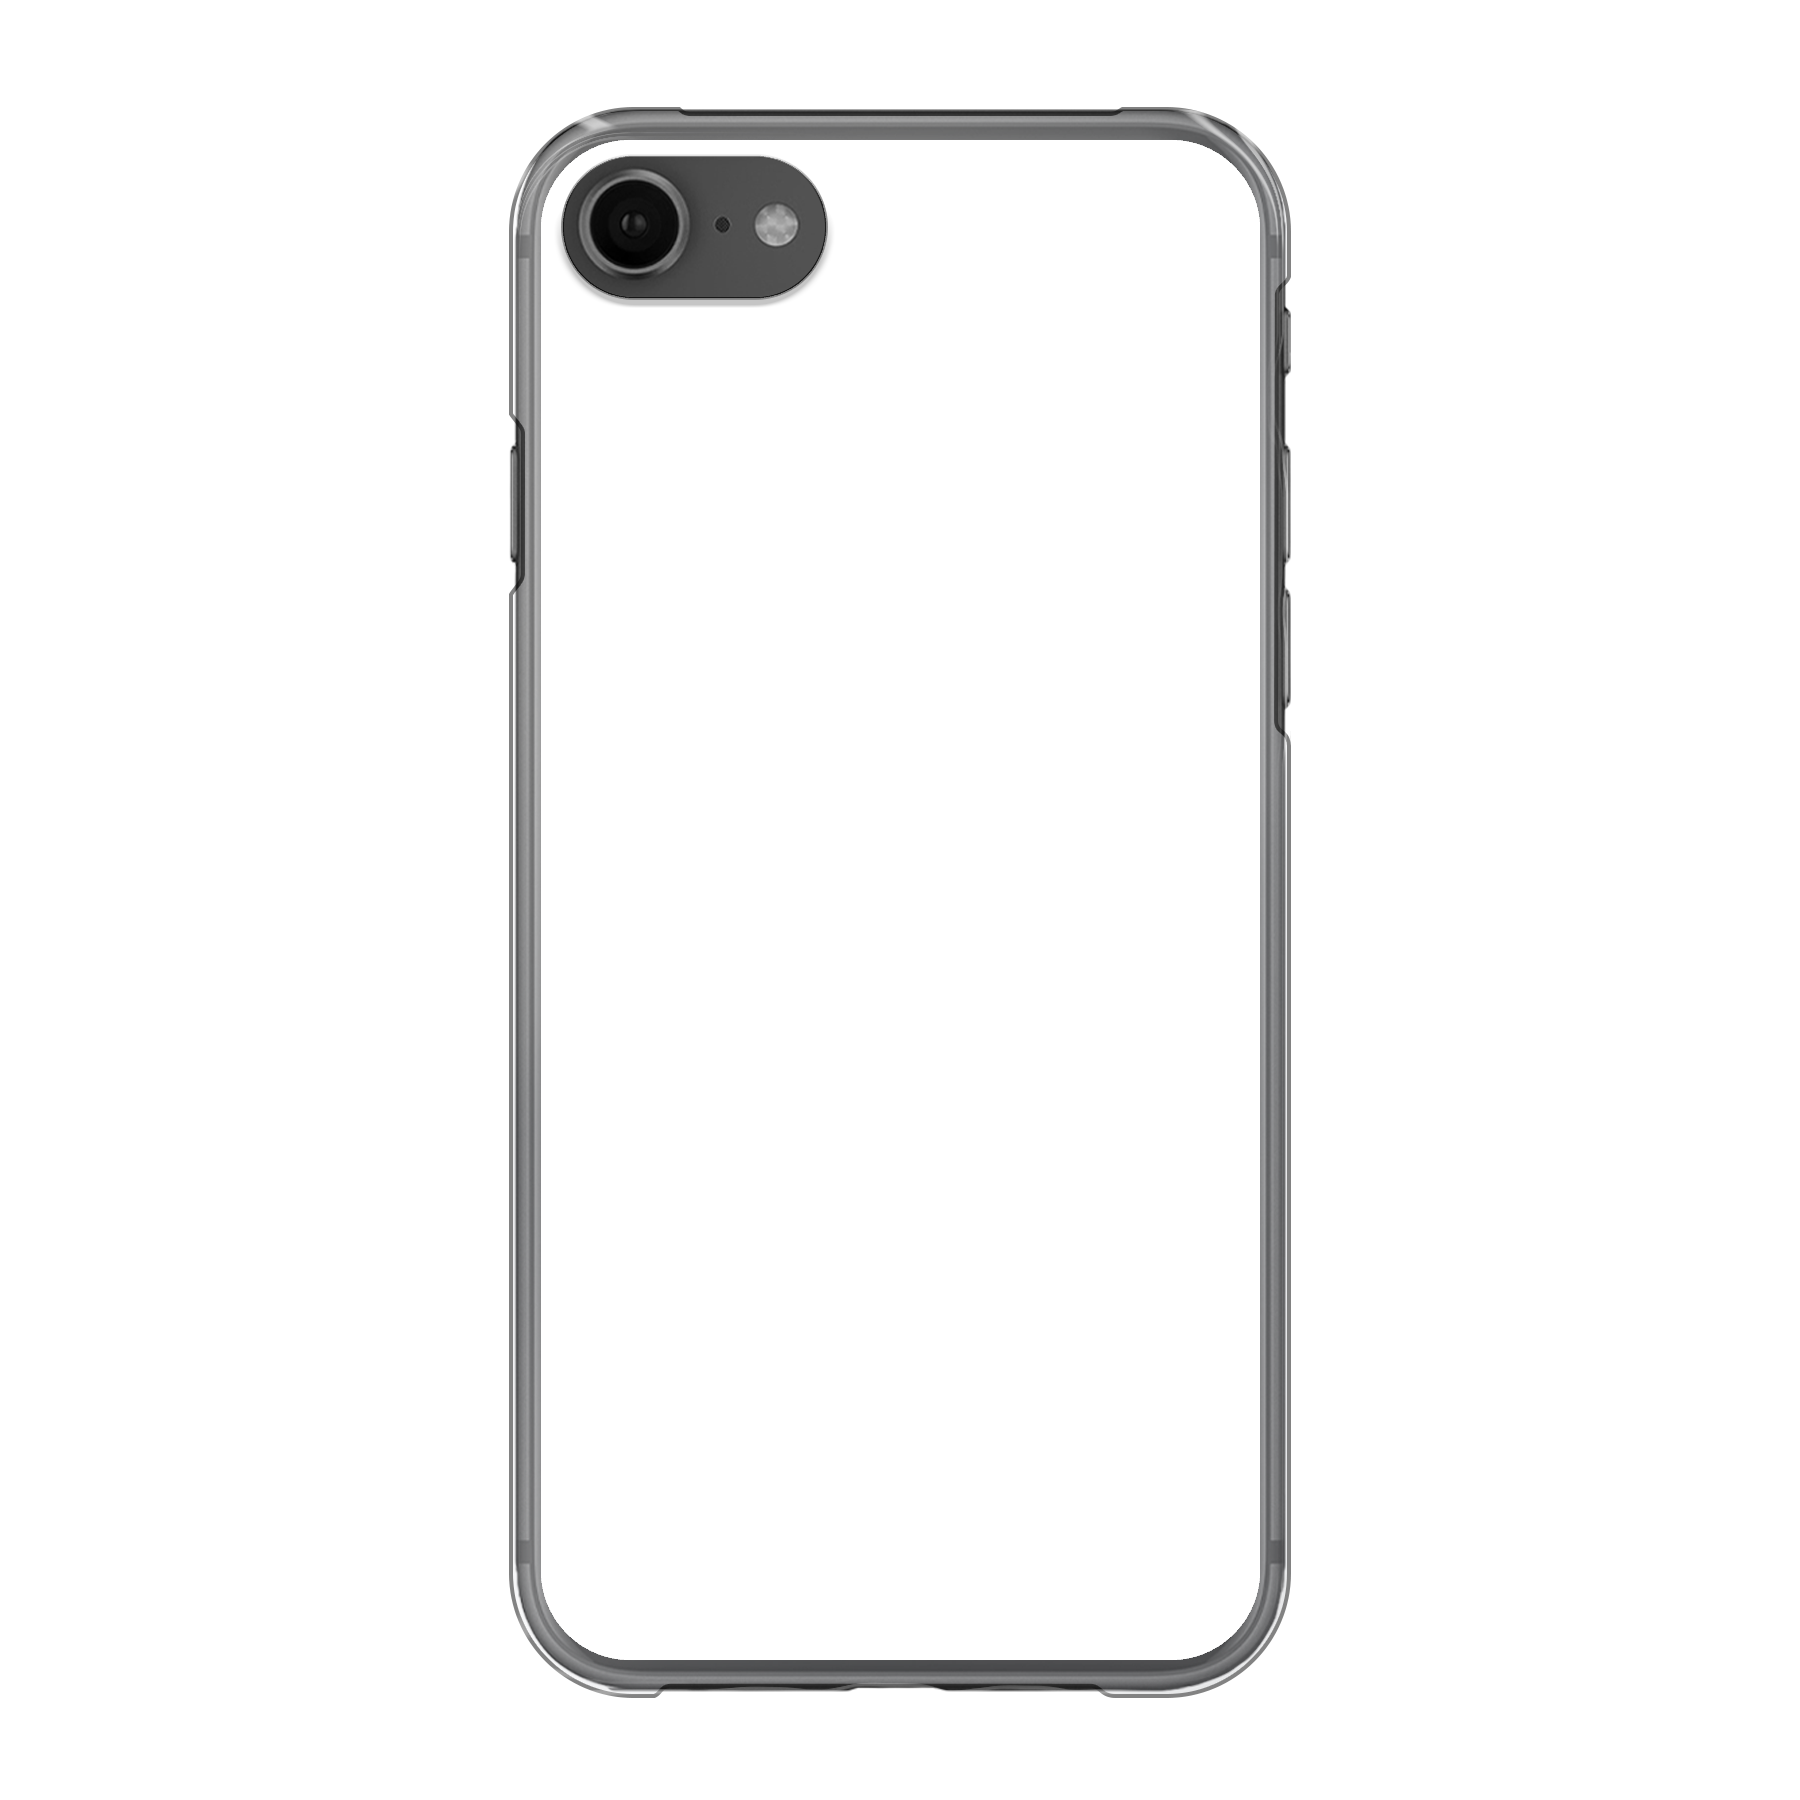 Apple iPhone 7 / 8 / SE (2020) Hard case (back printed, transparent)